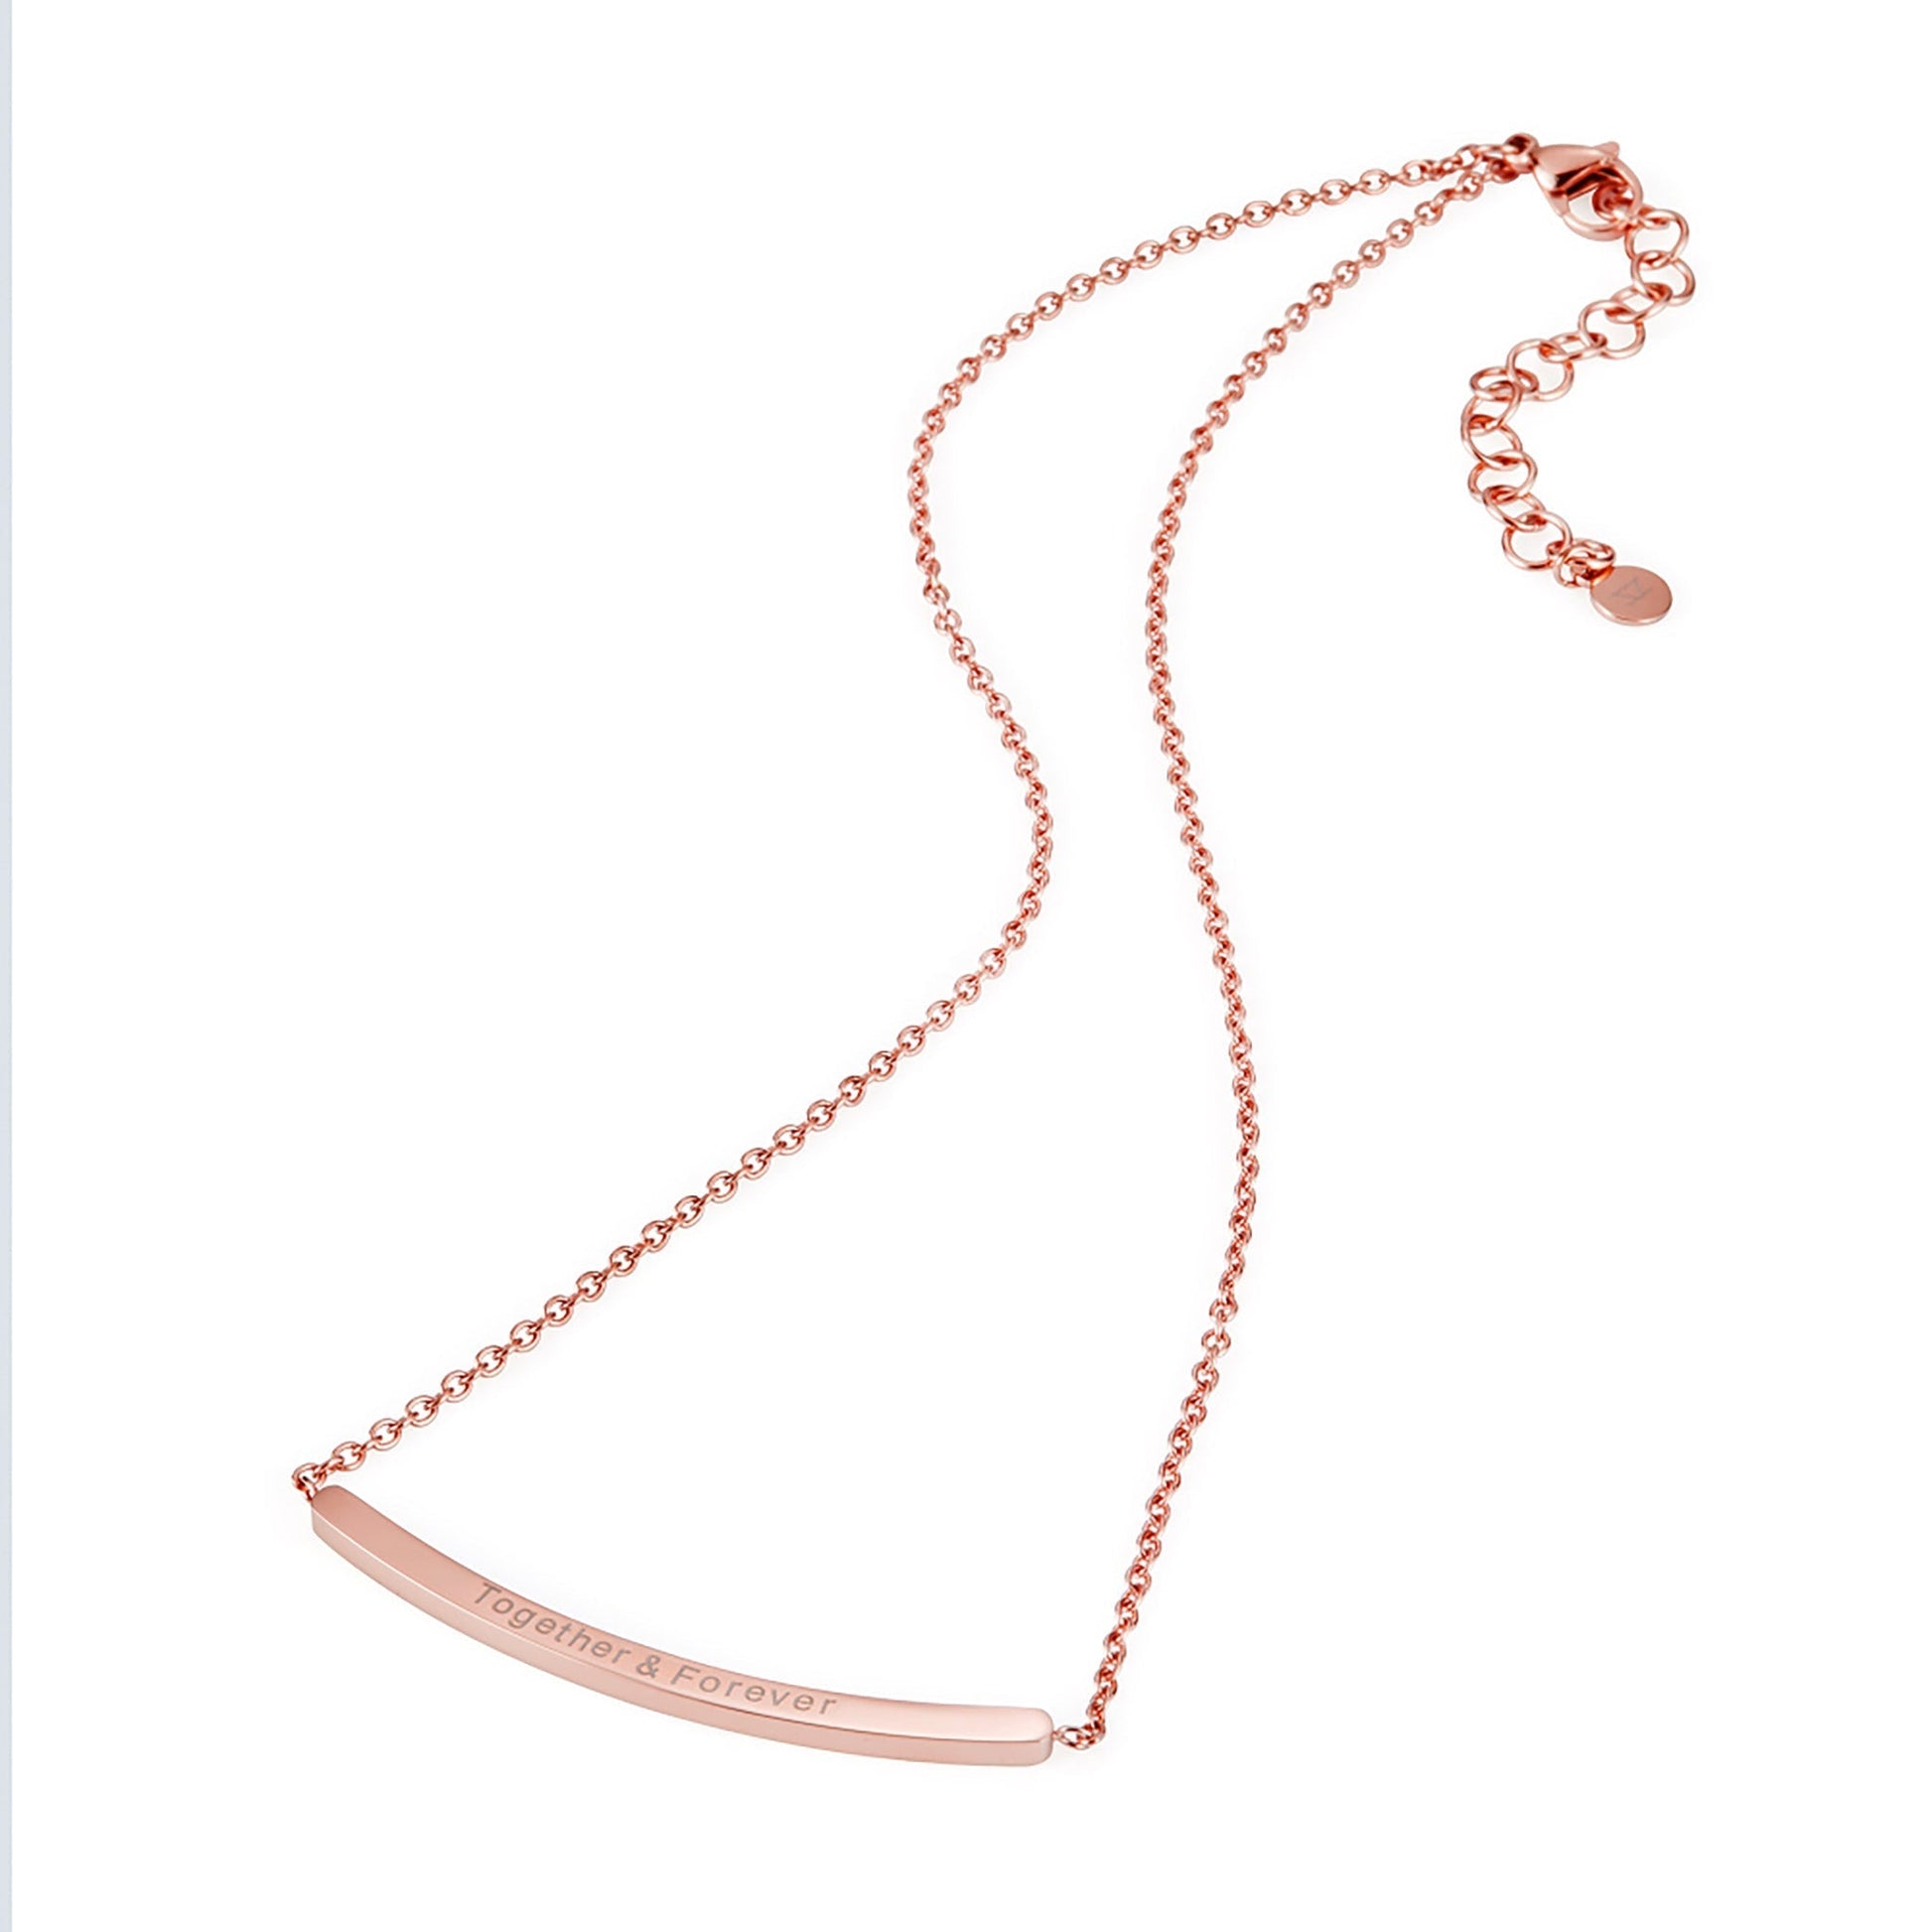 ZFNL001RG ZINK Women's Necklaces